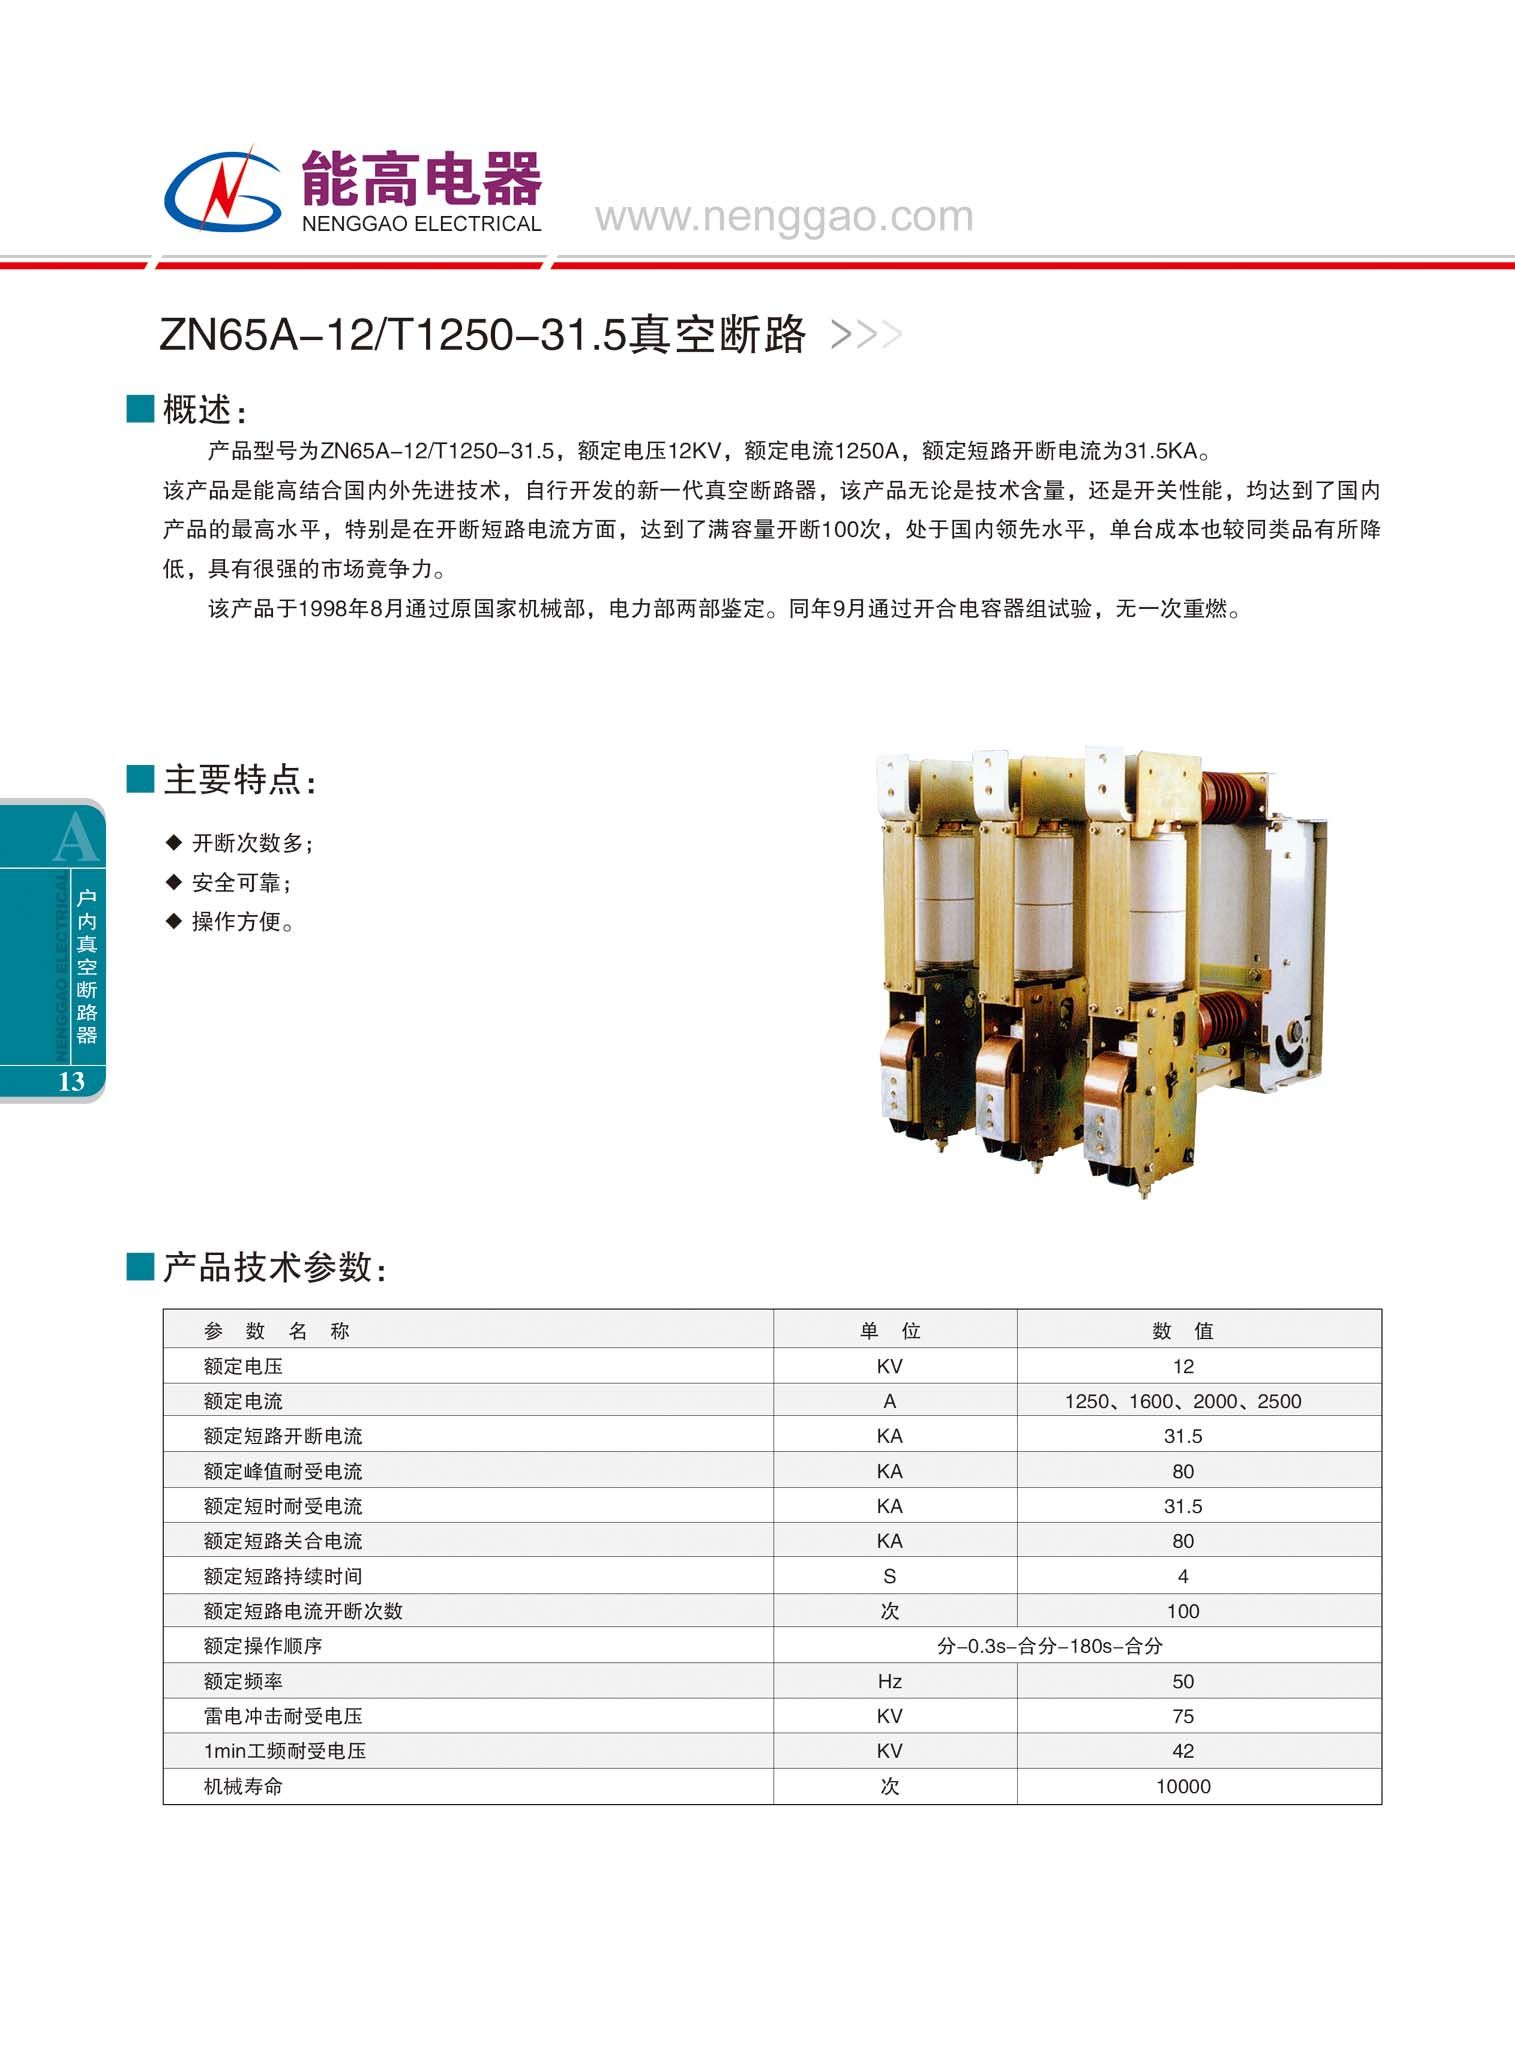 ZN65A-12/T1250-31真空断路器(图文)